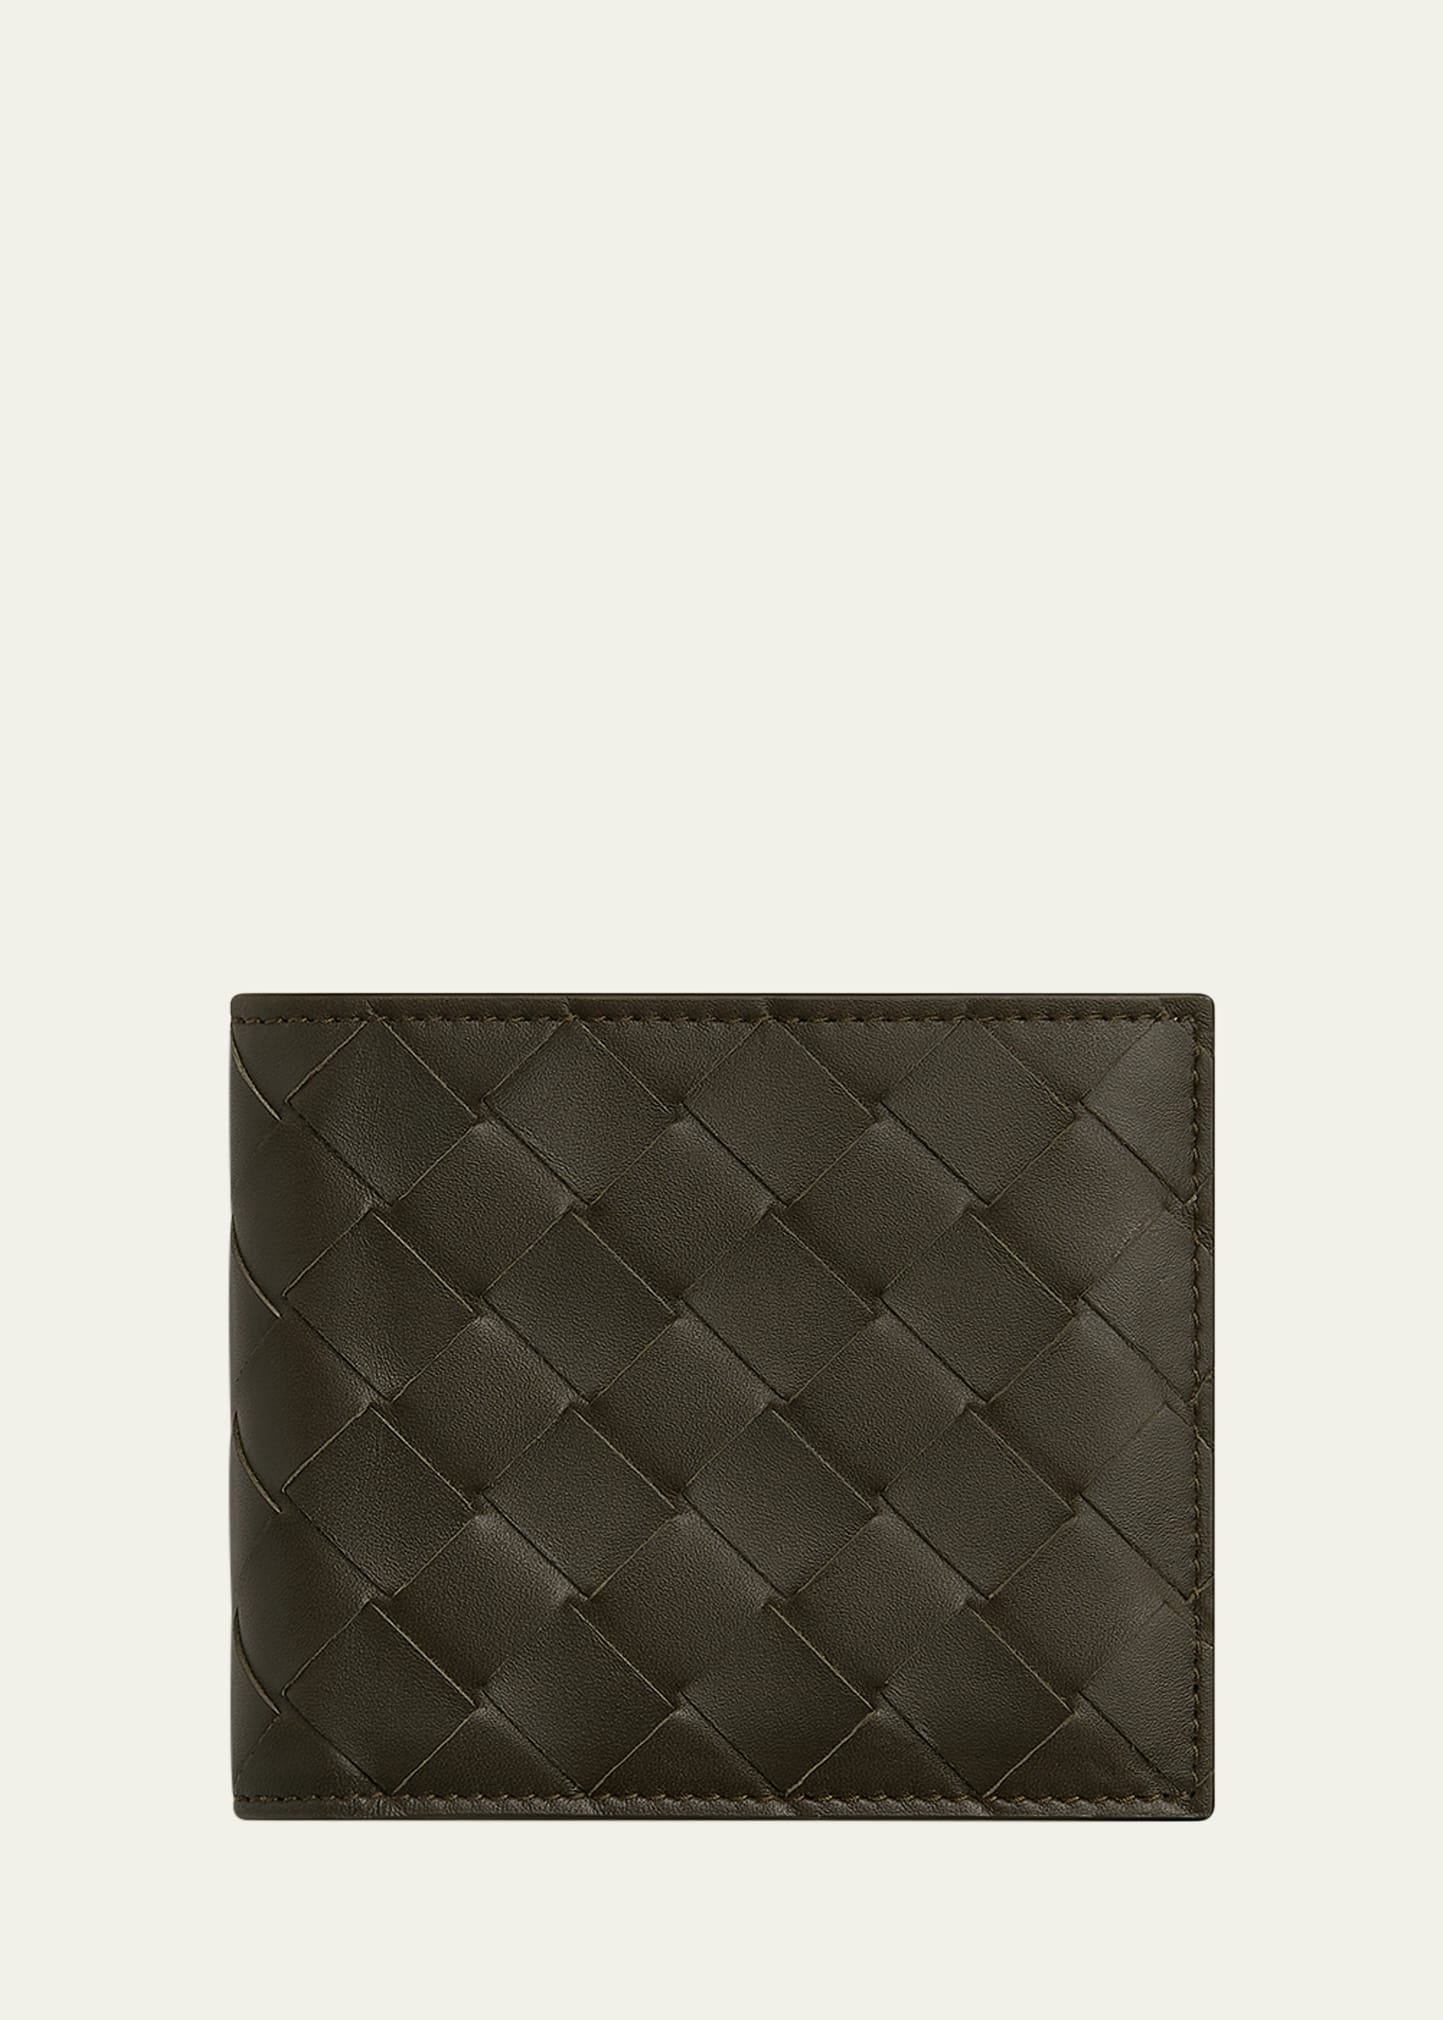 Shop Bottega Veneta Men's Intrecciato 15 Bicolor Leather Bifold Wallet In Kaki/dark Praline